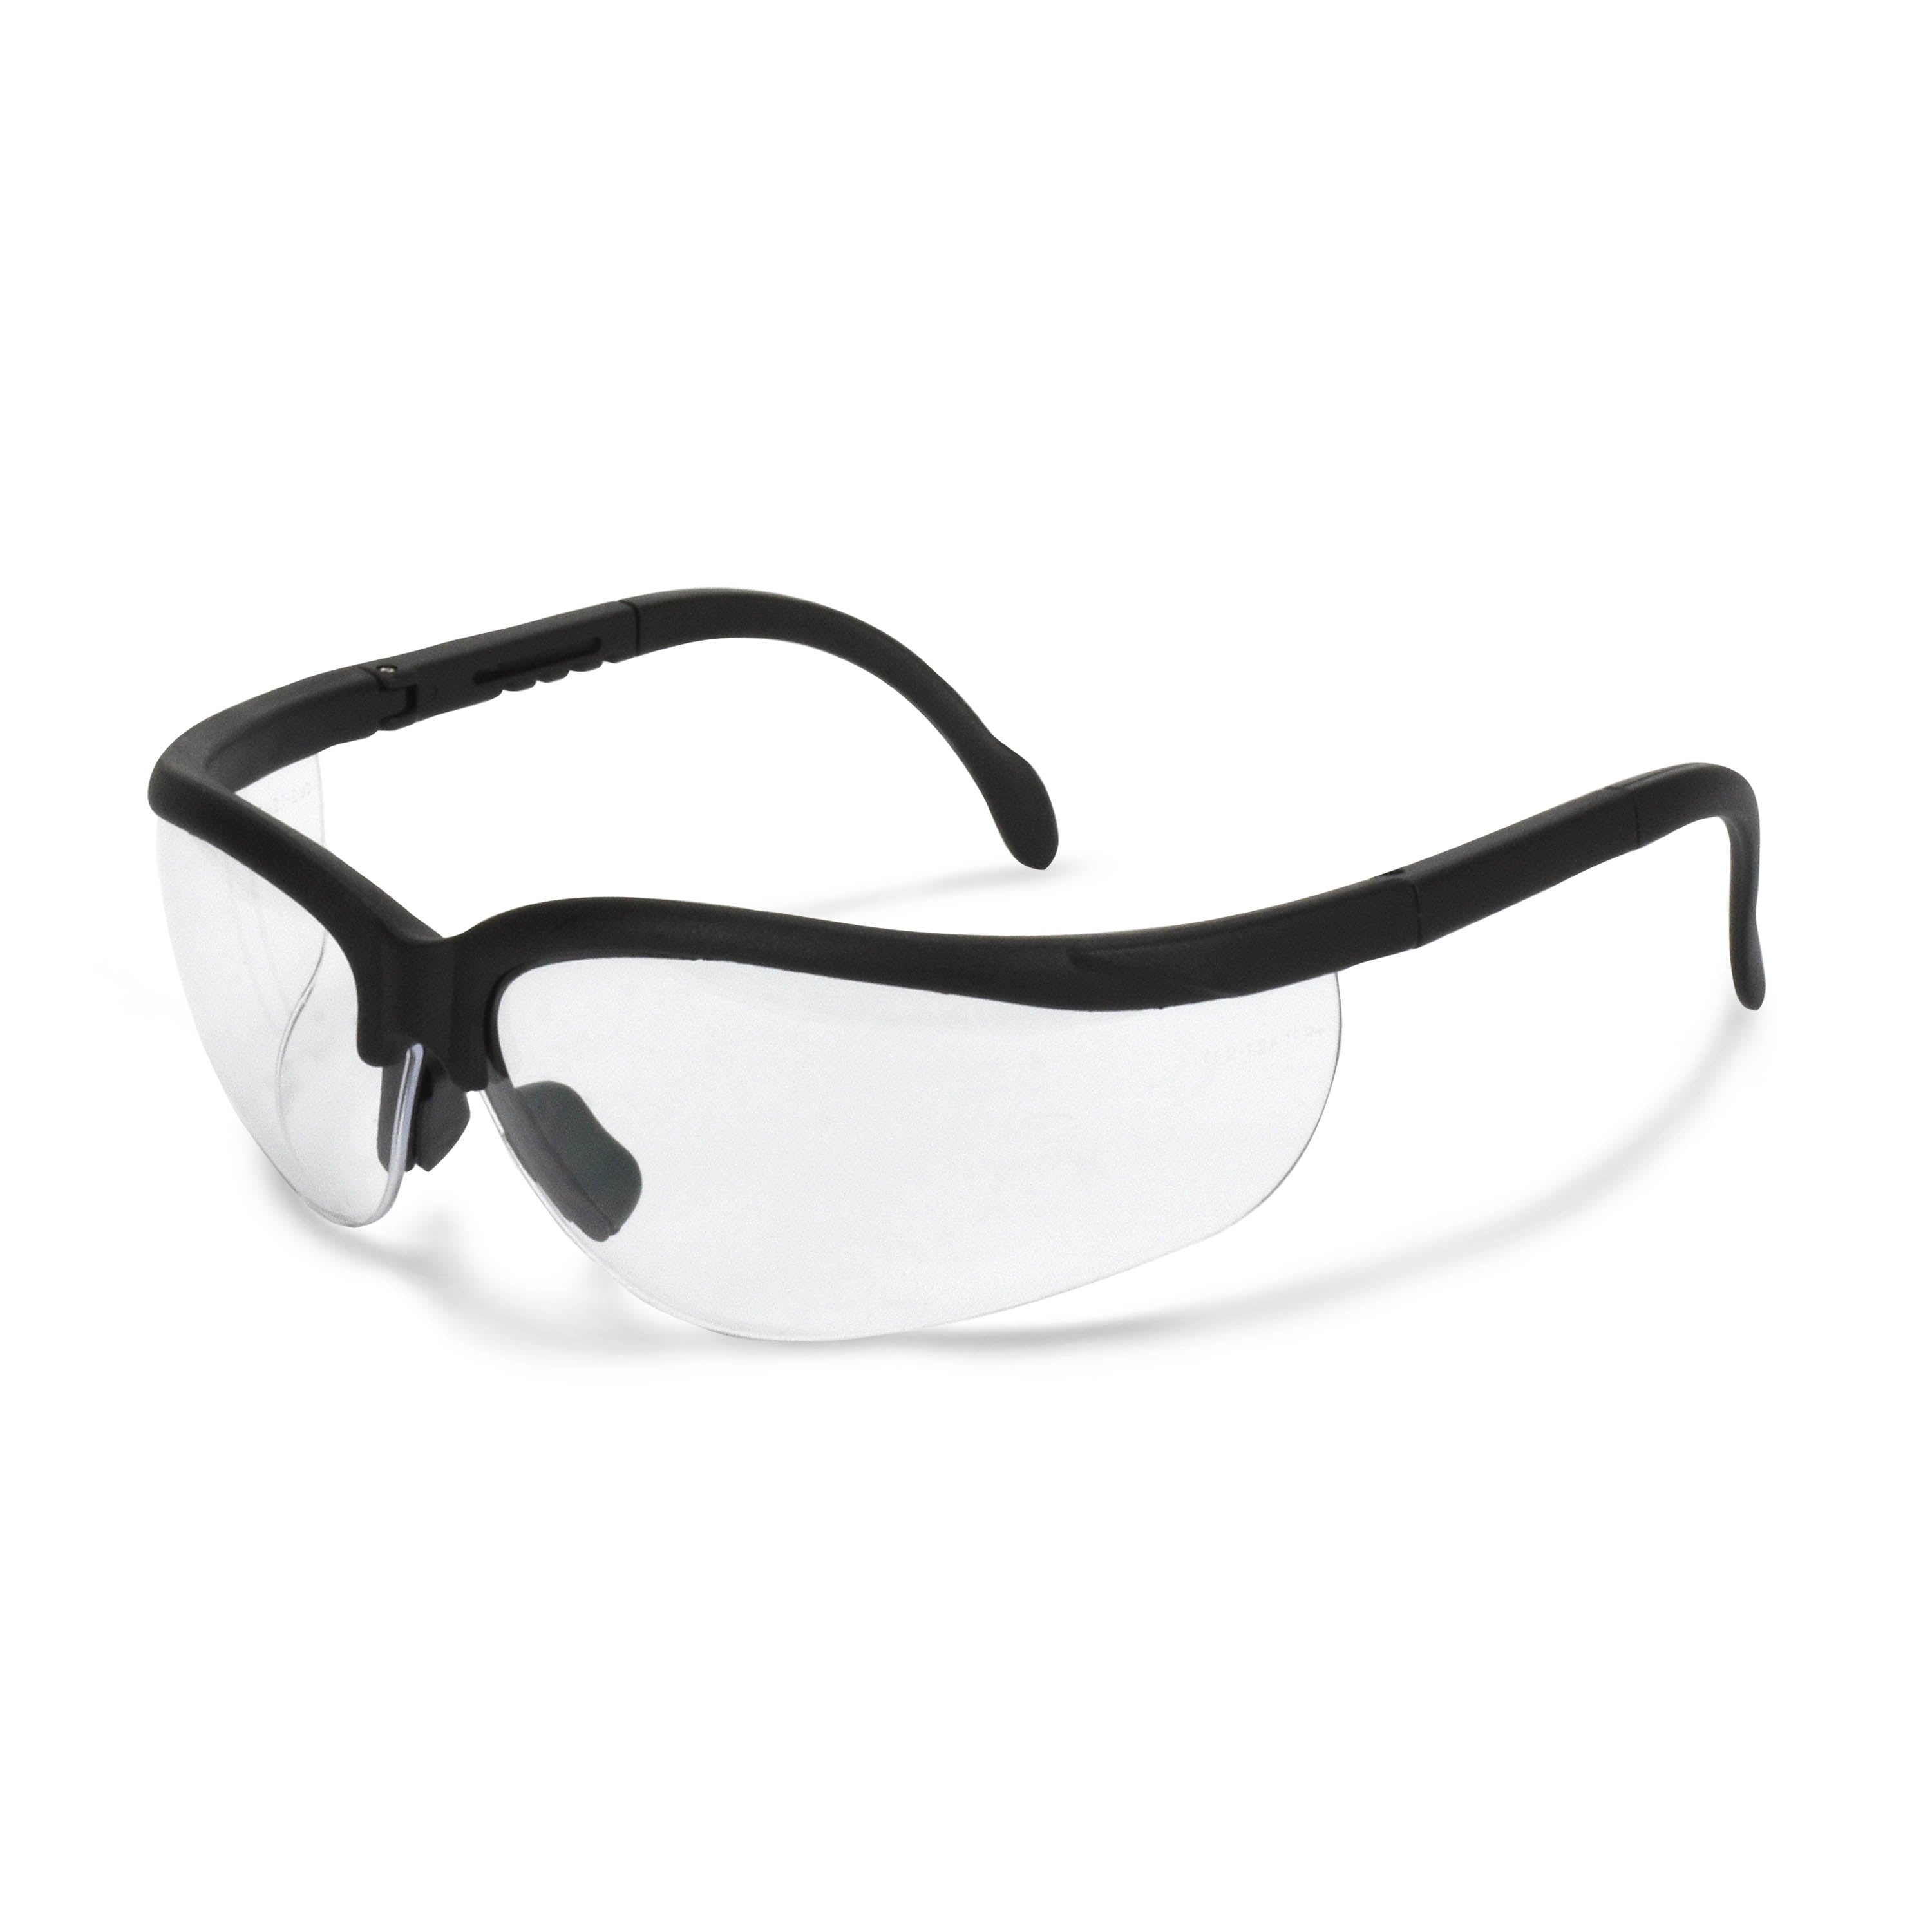 Radians - Indoor Farming Safety Glasses - VIL1-70 - Villume - Blue Lens -  Black Frame - ANSI Z87.1 - Impact Resistant